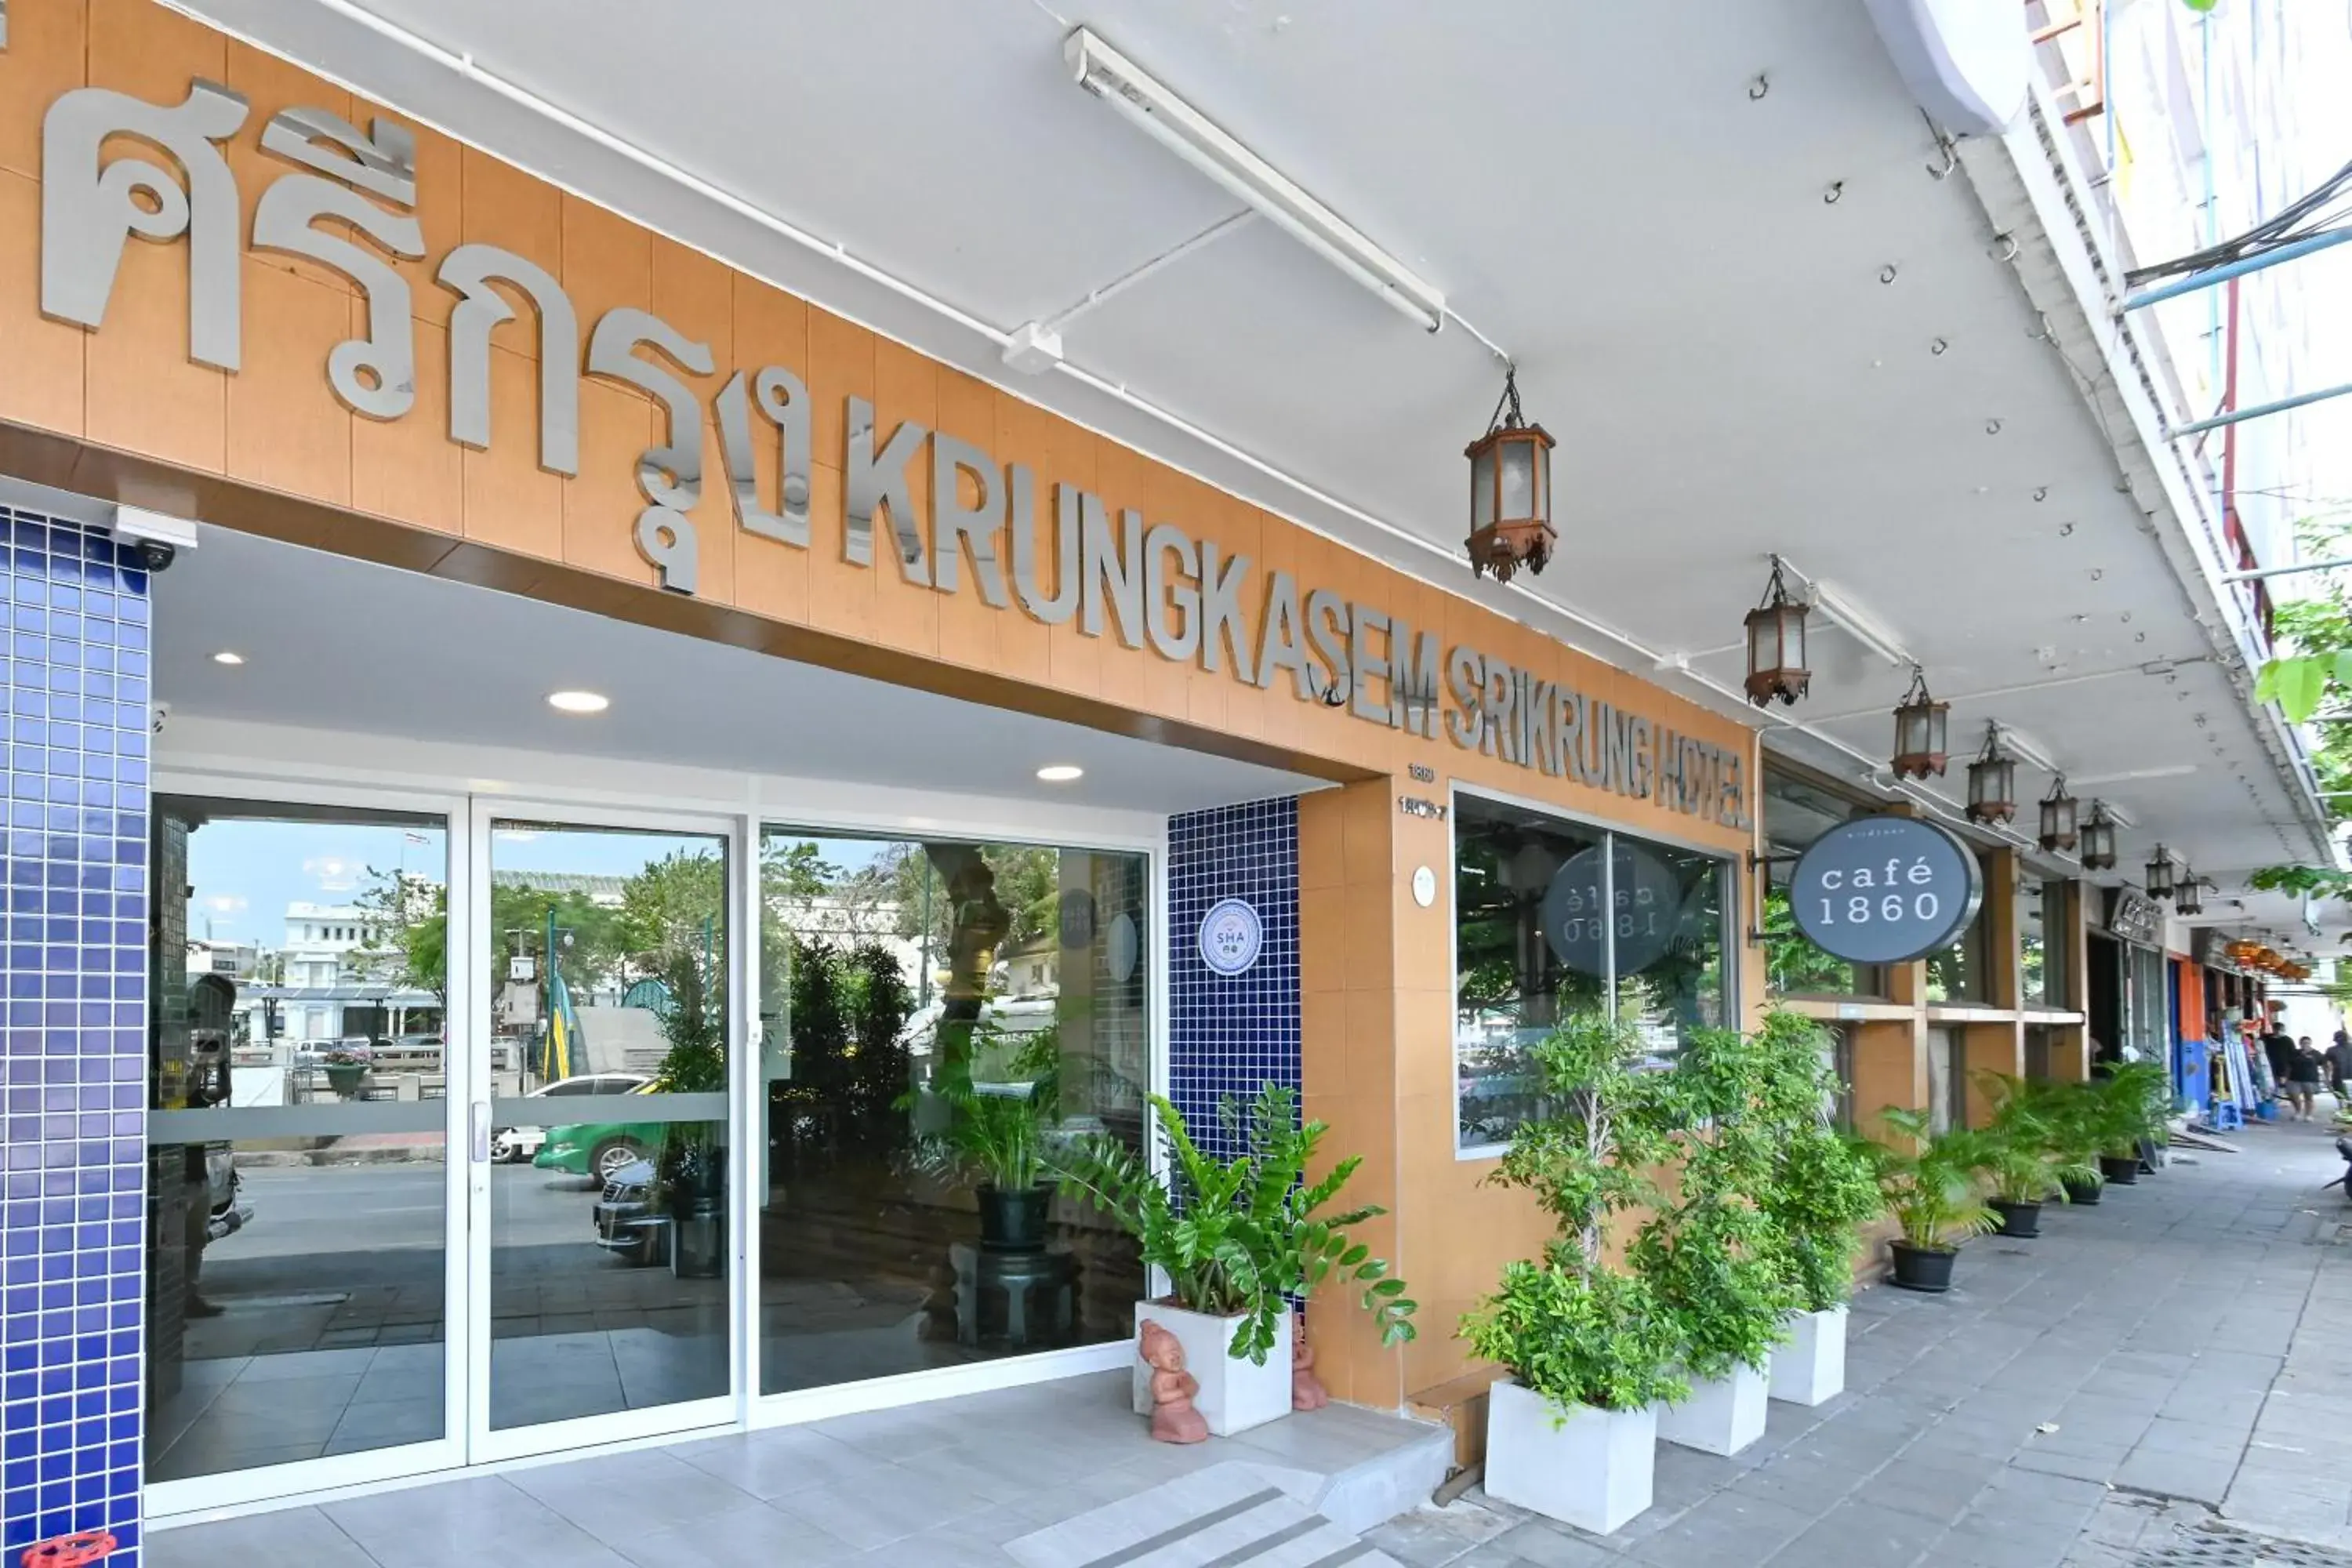 Property building in The Krungkasem Srikrung Hotel